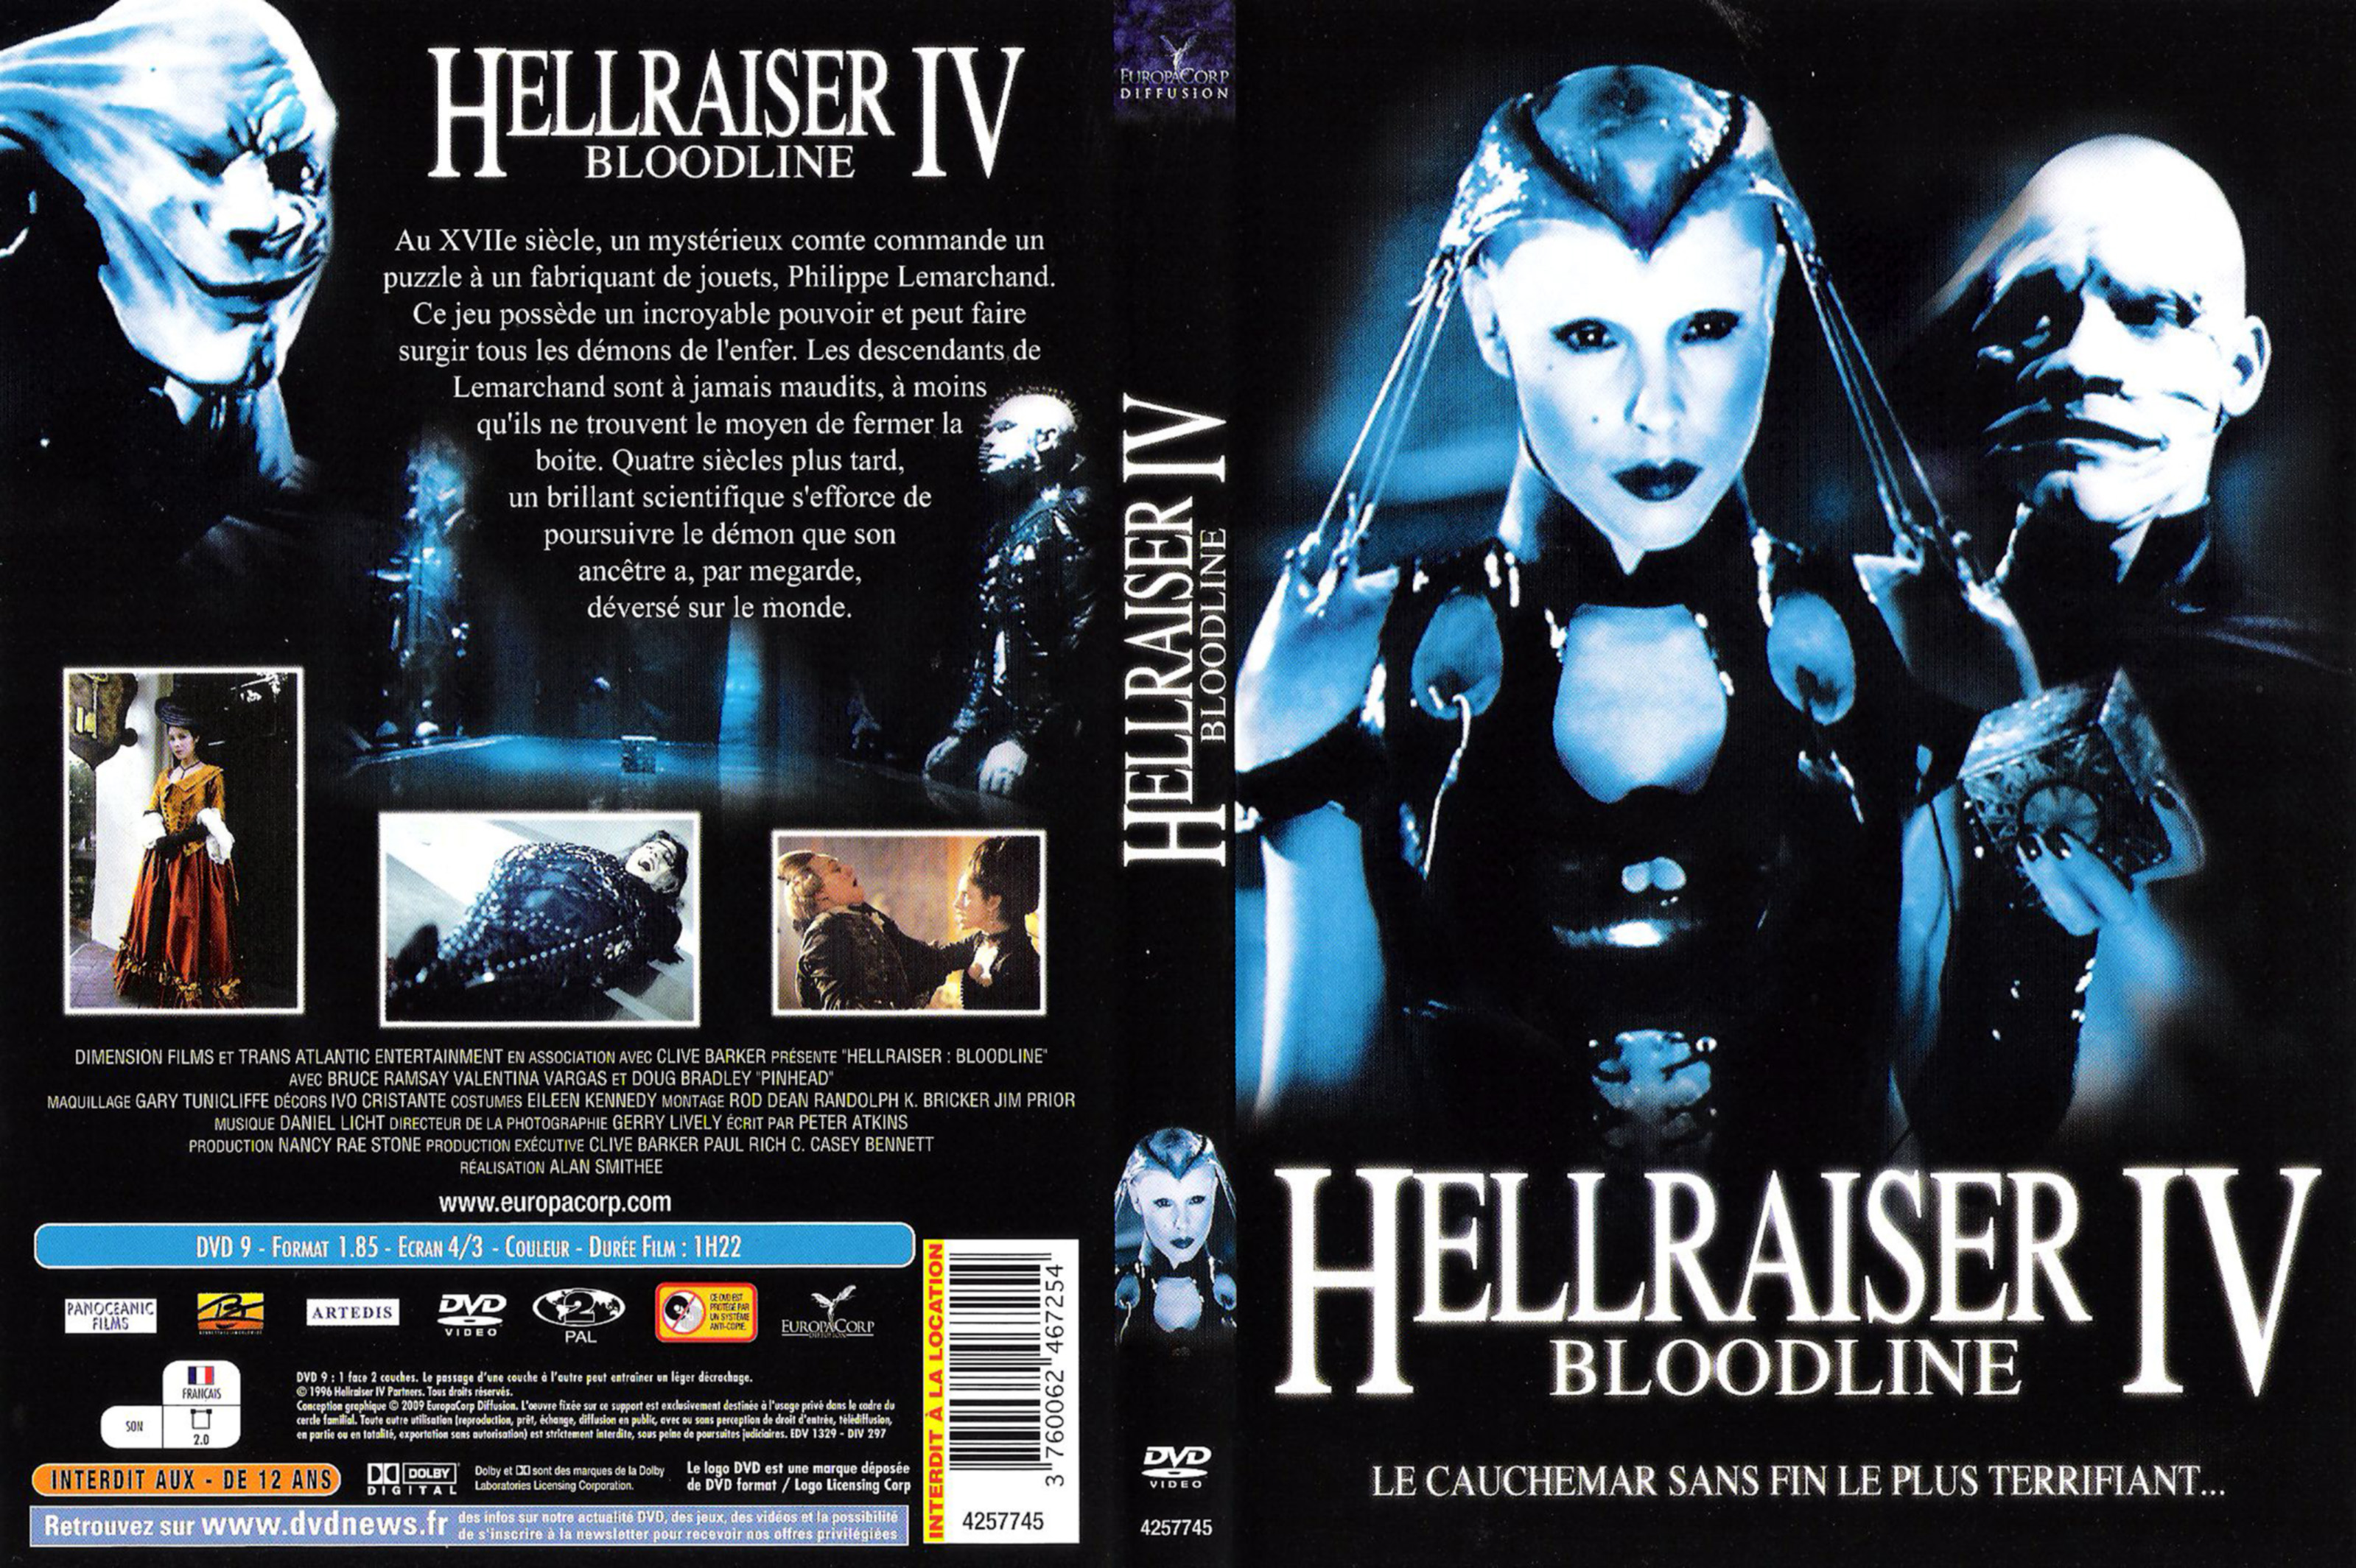 Jaquette DVD Hellraiser bloodline v2